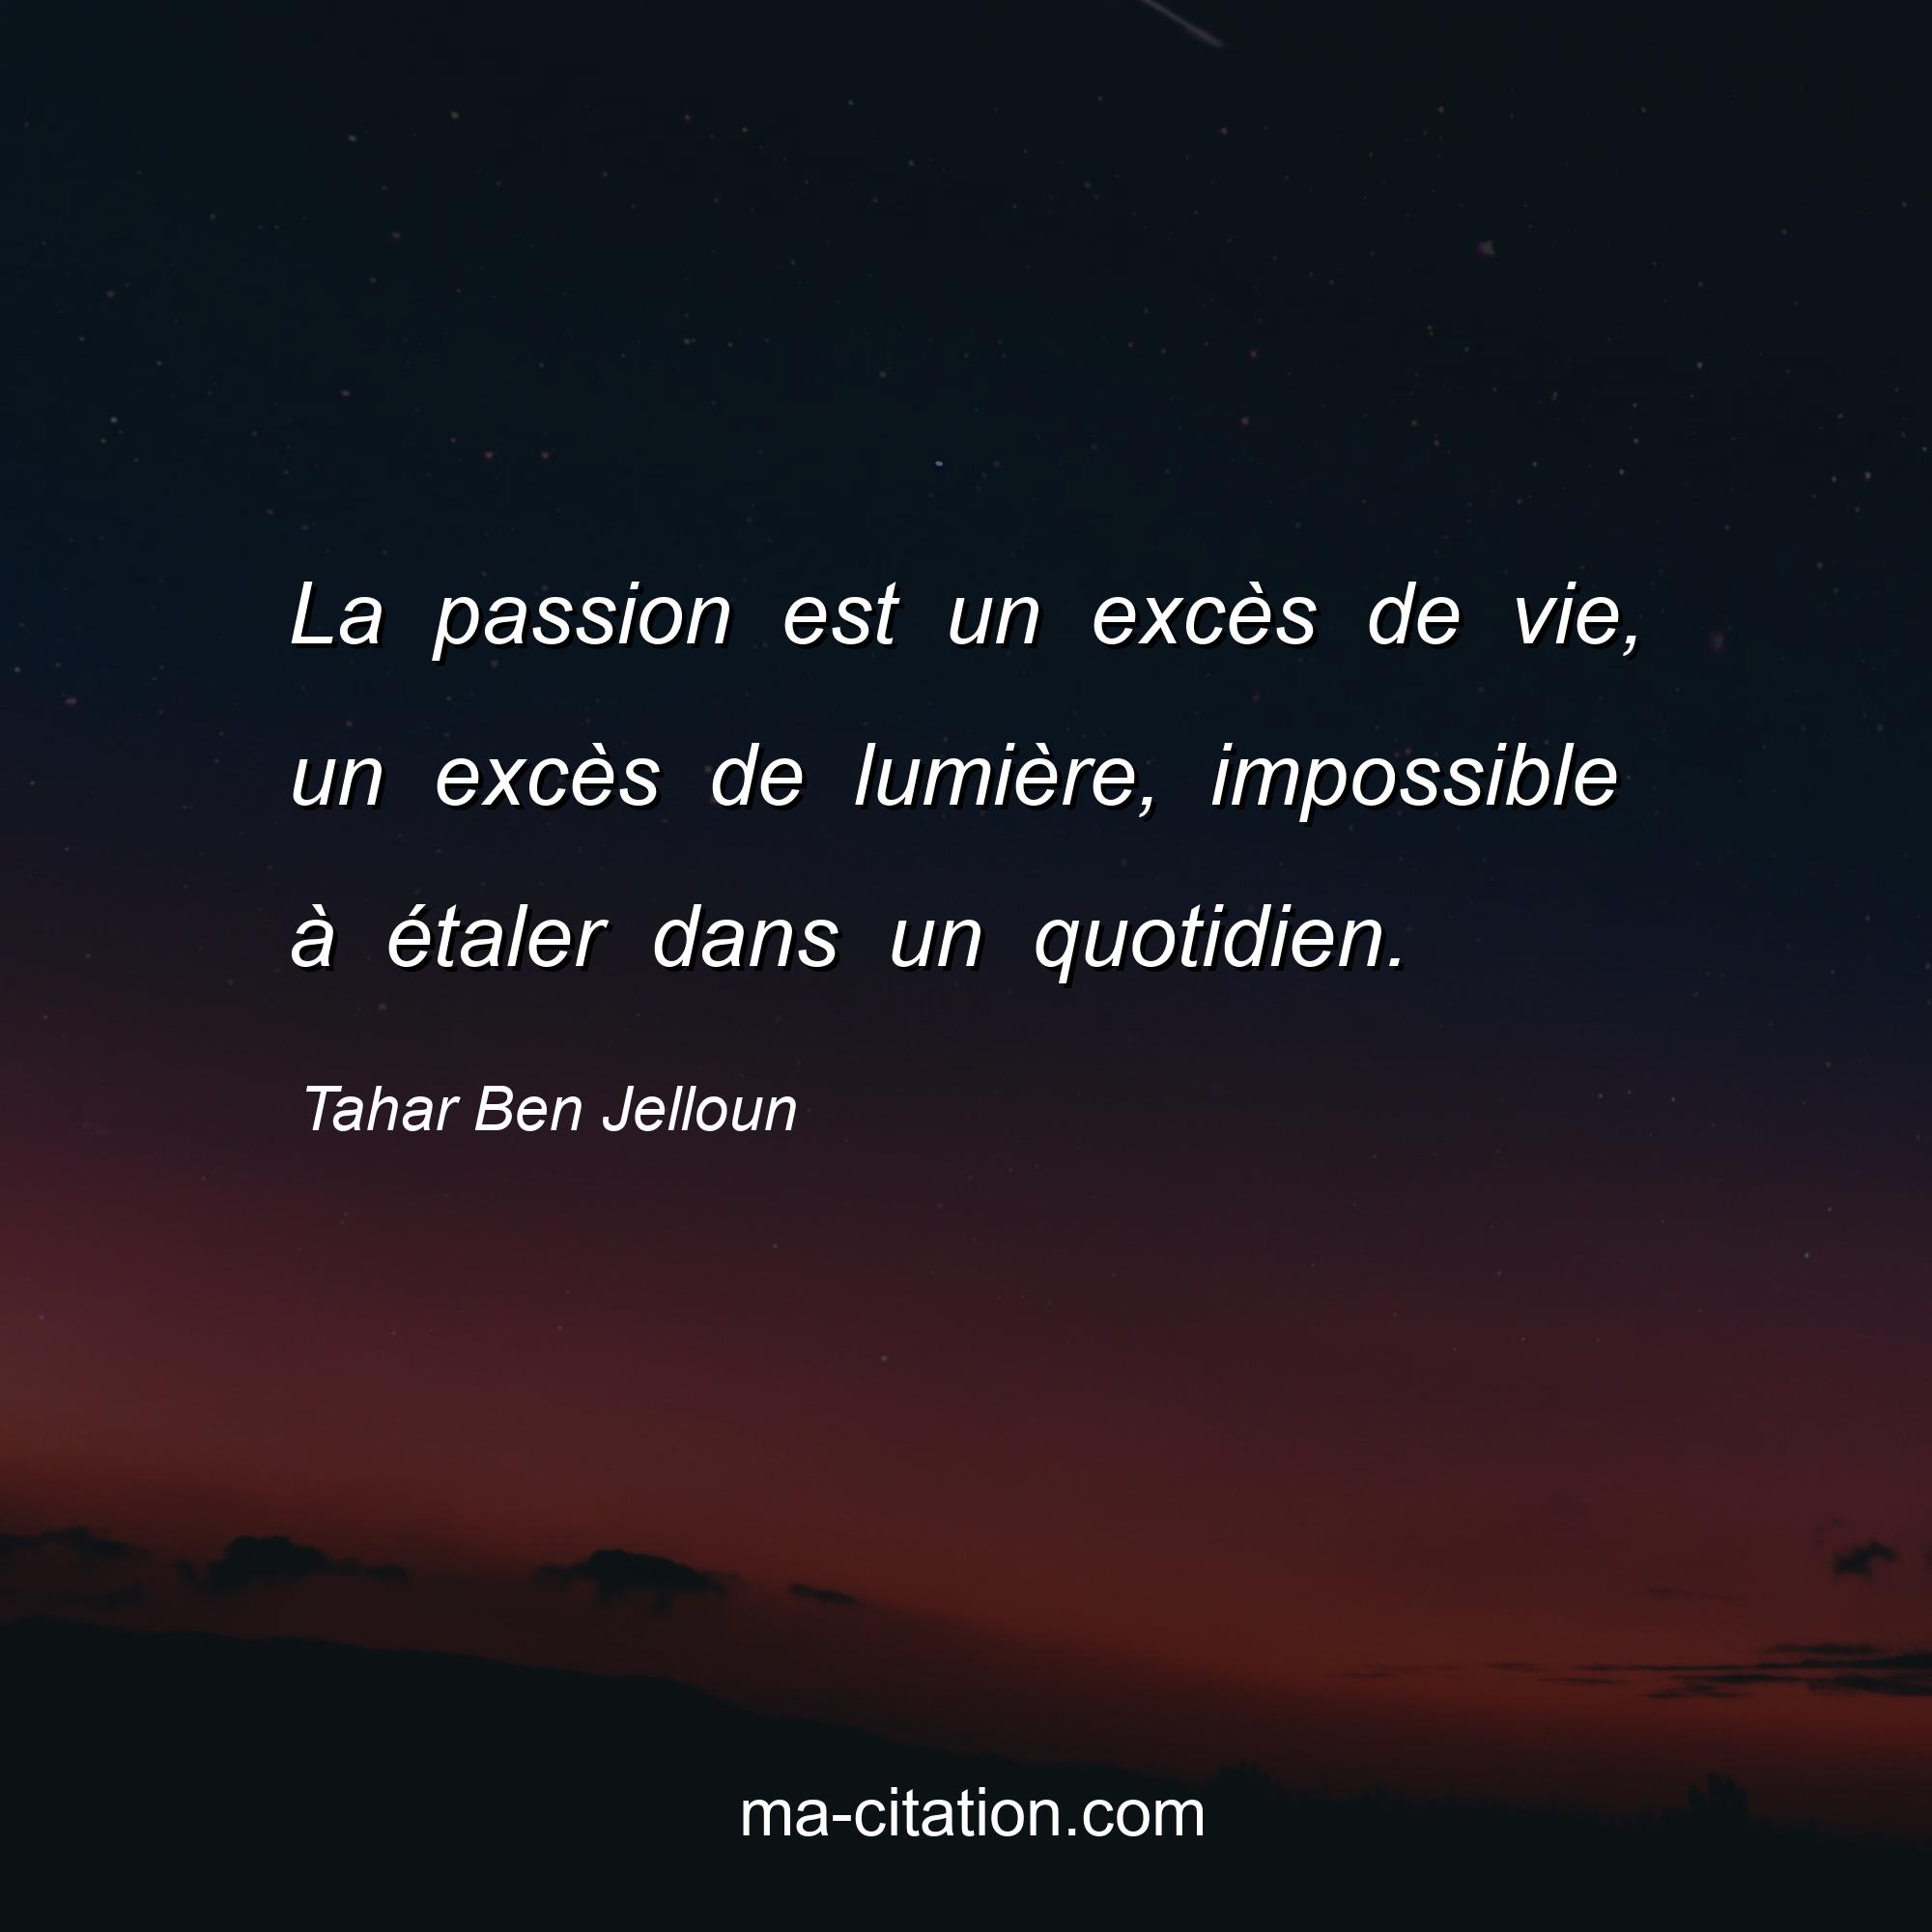 Tahar Ben Jelloun : La passion est un excès de vie, un excès de lumière, impossible à étaler dans un quotidien.